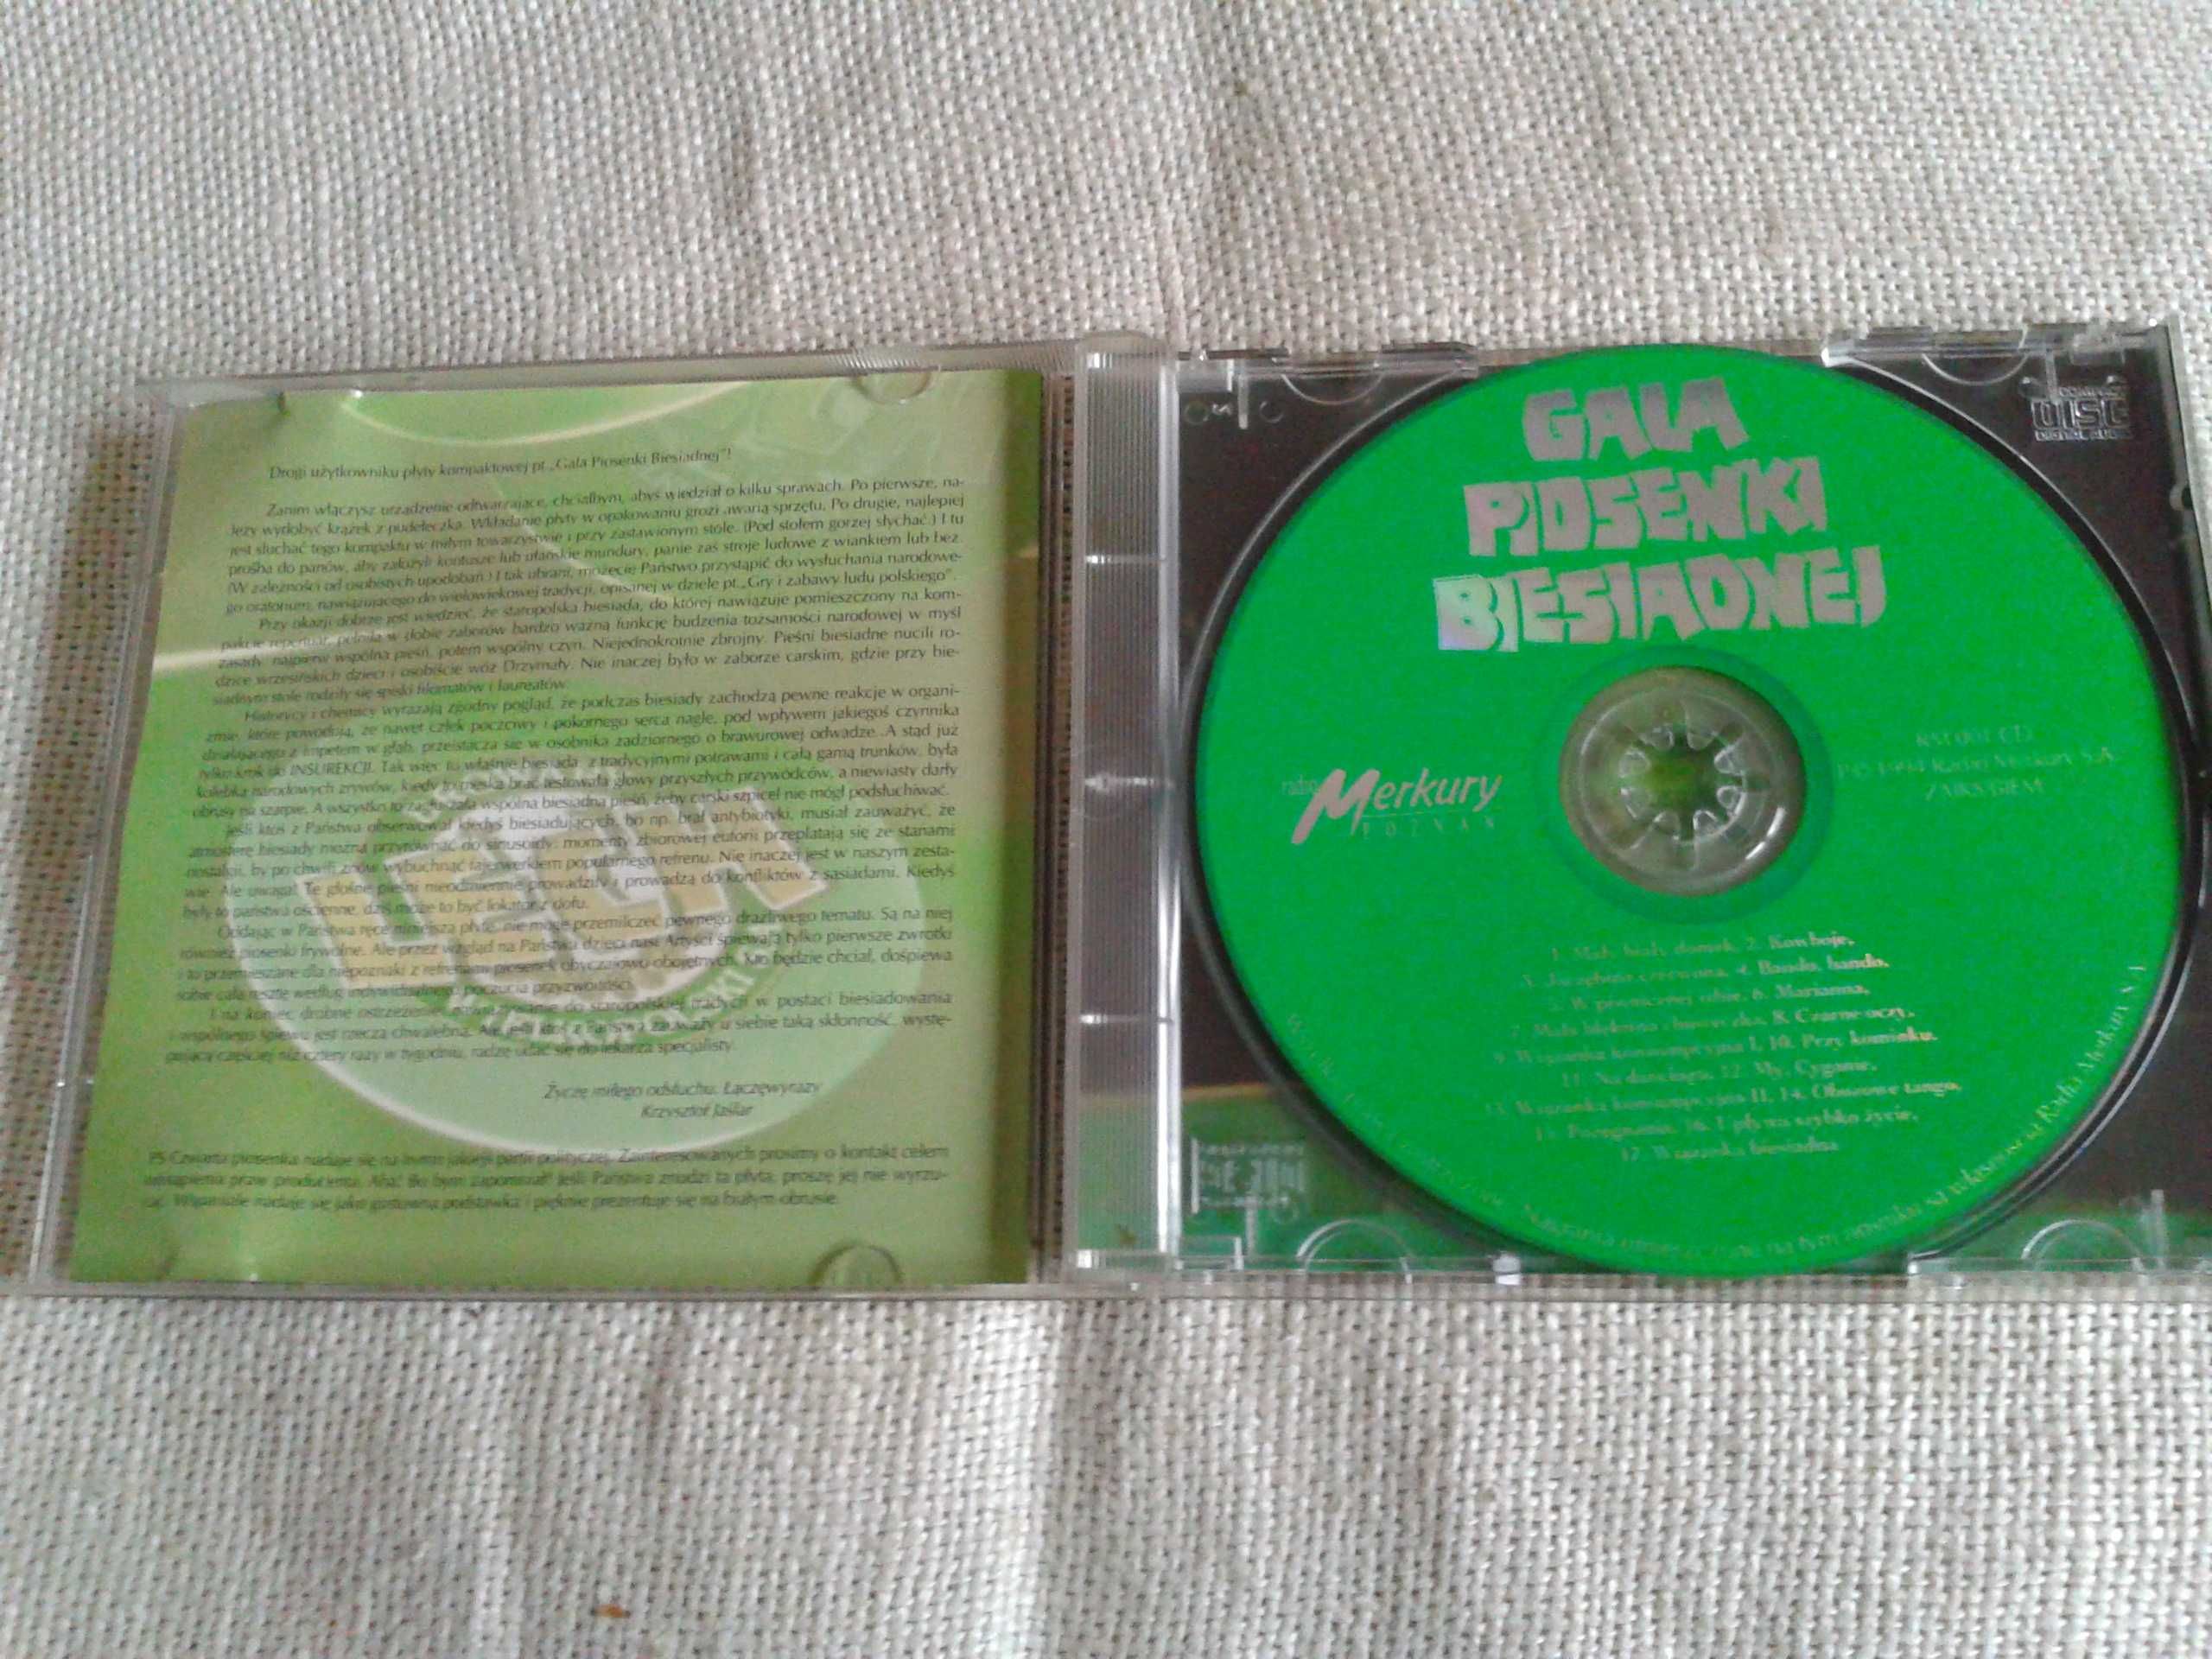 Gala Piosenki Biesiadnej - Mały Biały Domek  CD